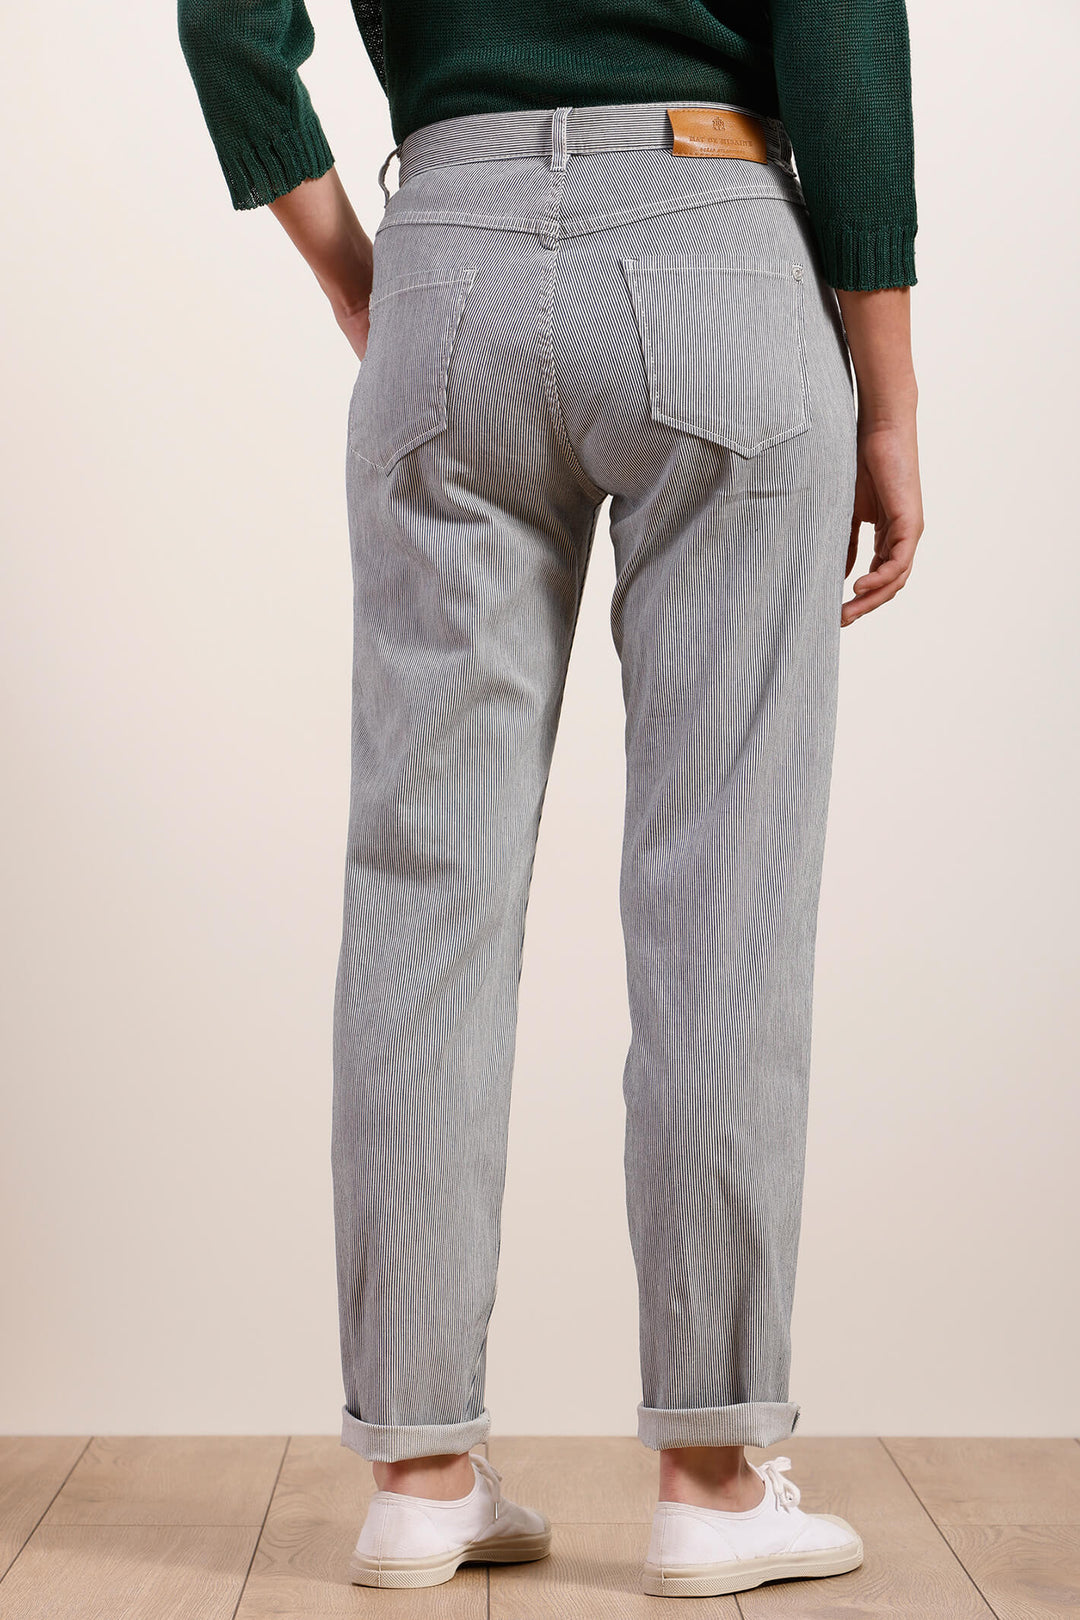 Mat De Misaine 11785 Pimori Navy Stripe Patch Pocket Trouser - Shirley Allum Boutique